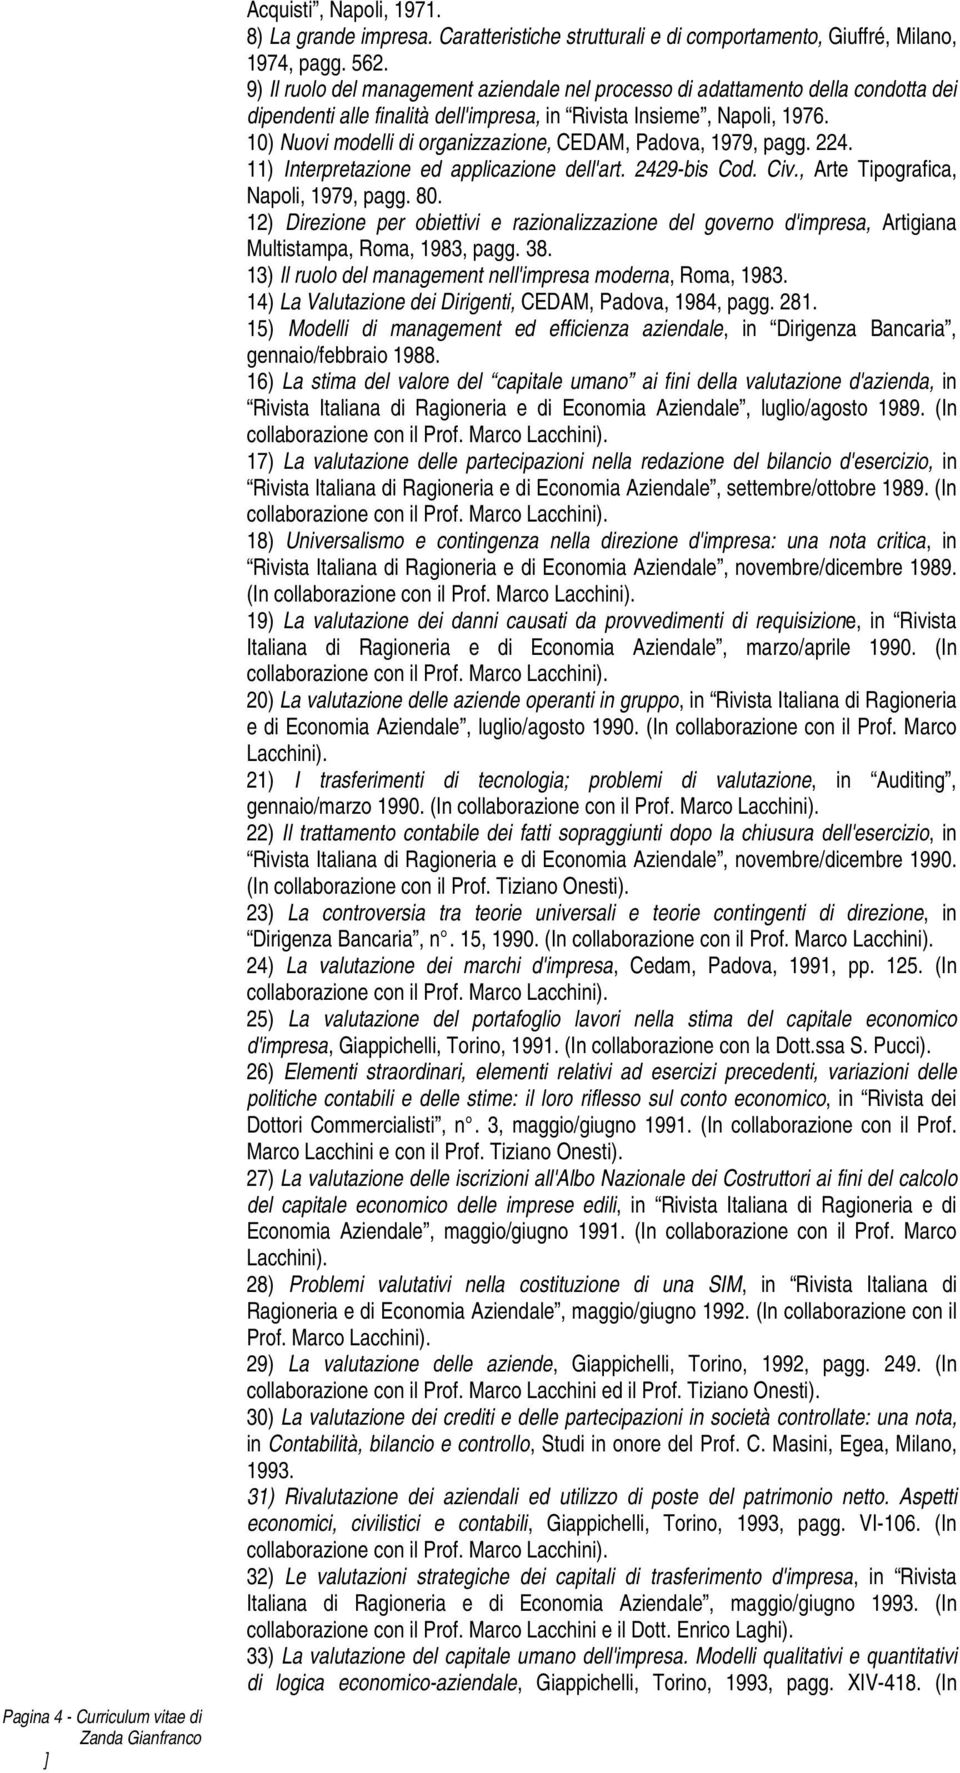 10) Nuovi modelli di organizzazione, CEDAM, Padova, 1979, pagg. 224. 11) Interpretazione ed applicazione dell'art. 2429-bis Cod. Civ., Arte Tipografica, Napoli, 1979, pagg. 80.